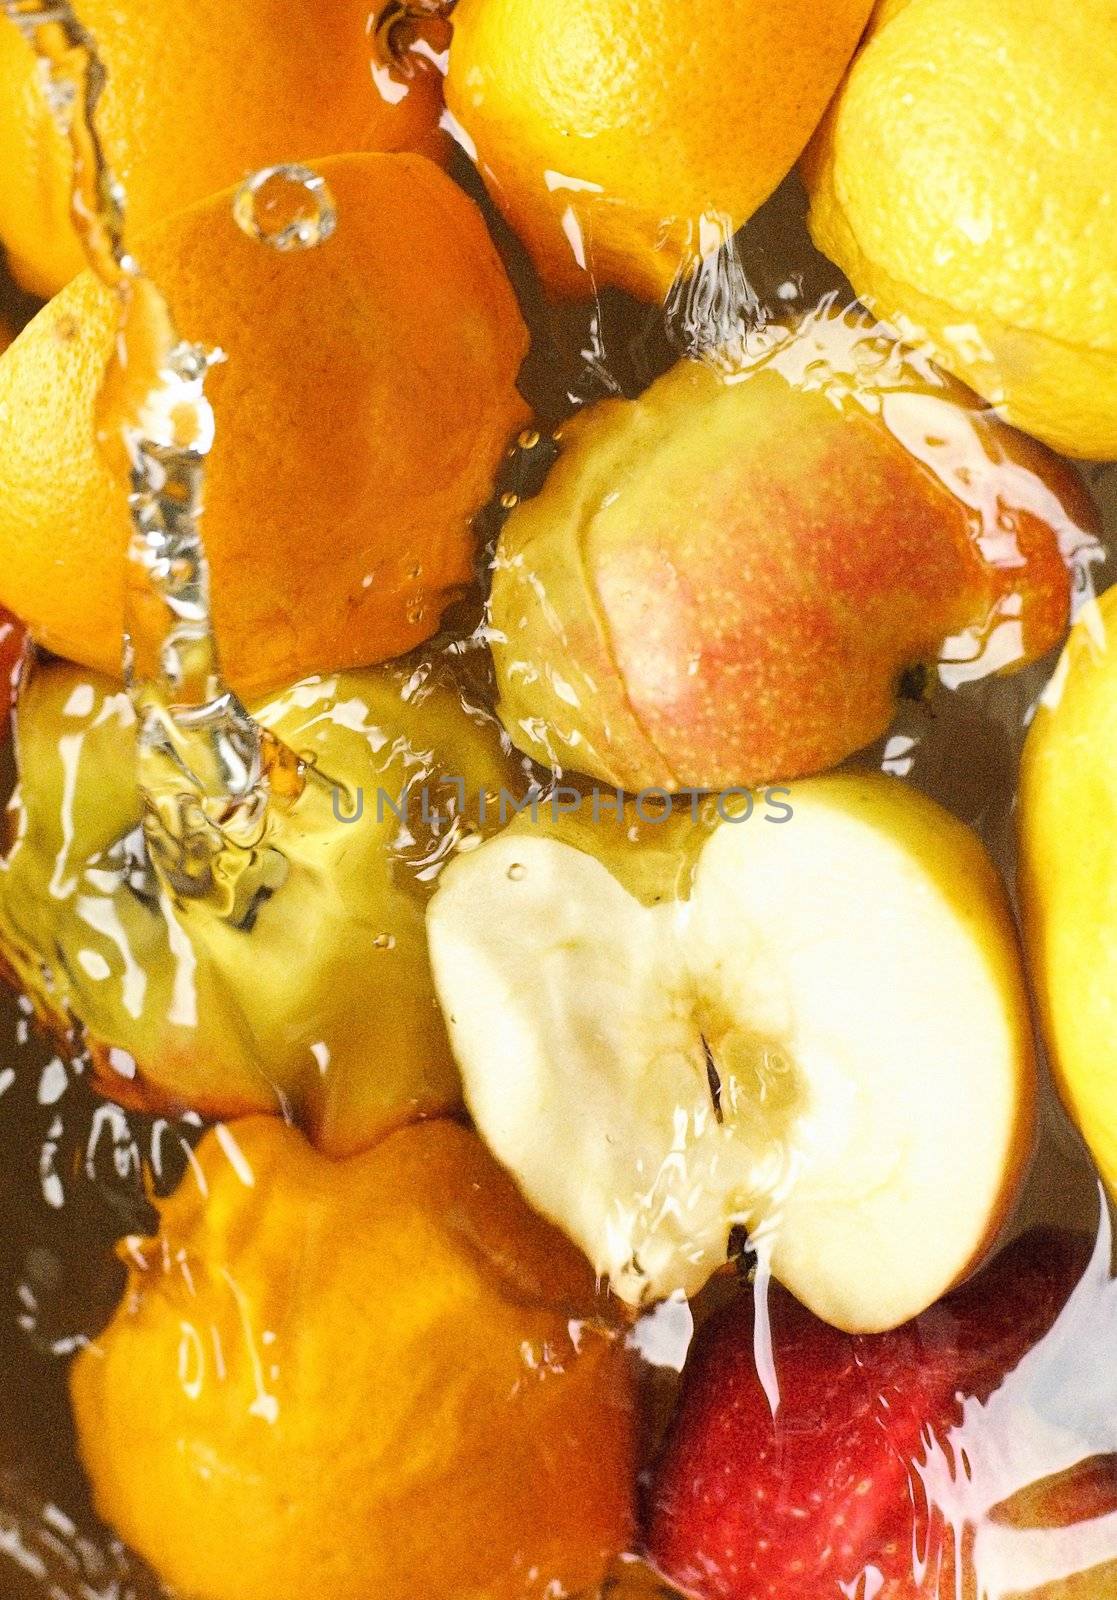 fresh fruit, apples, lemons, oranges, - swim in juice, water..